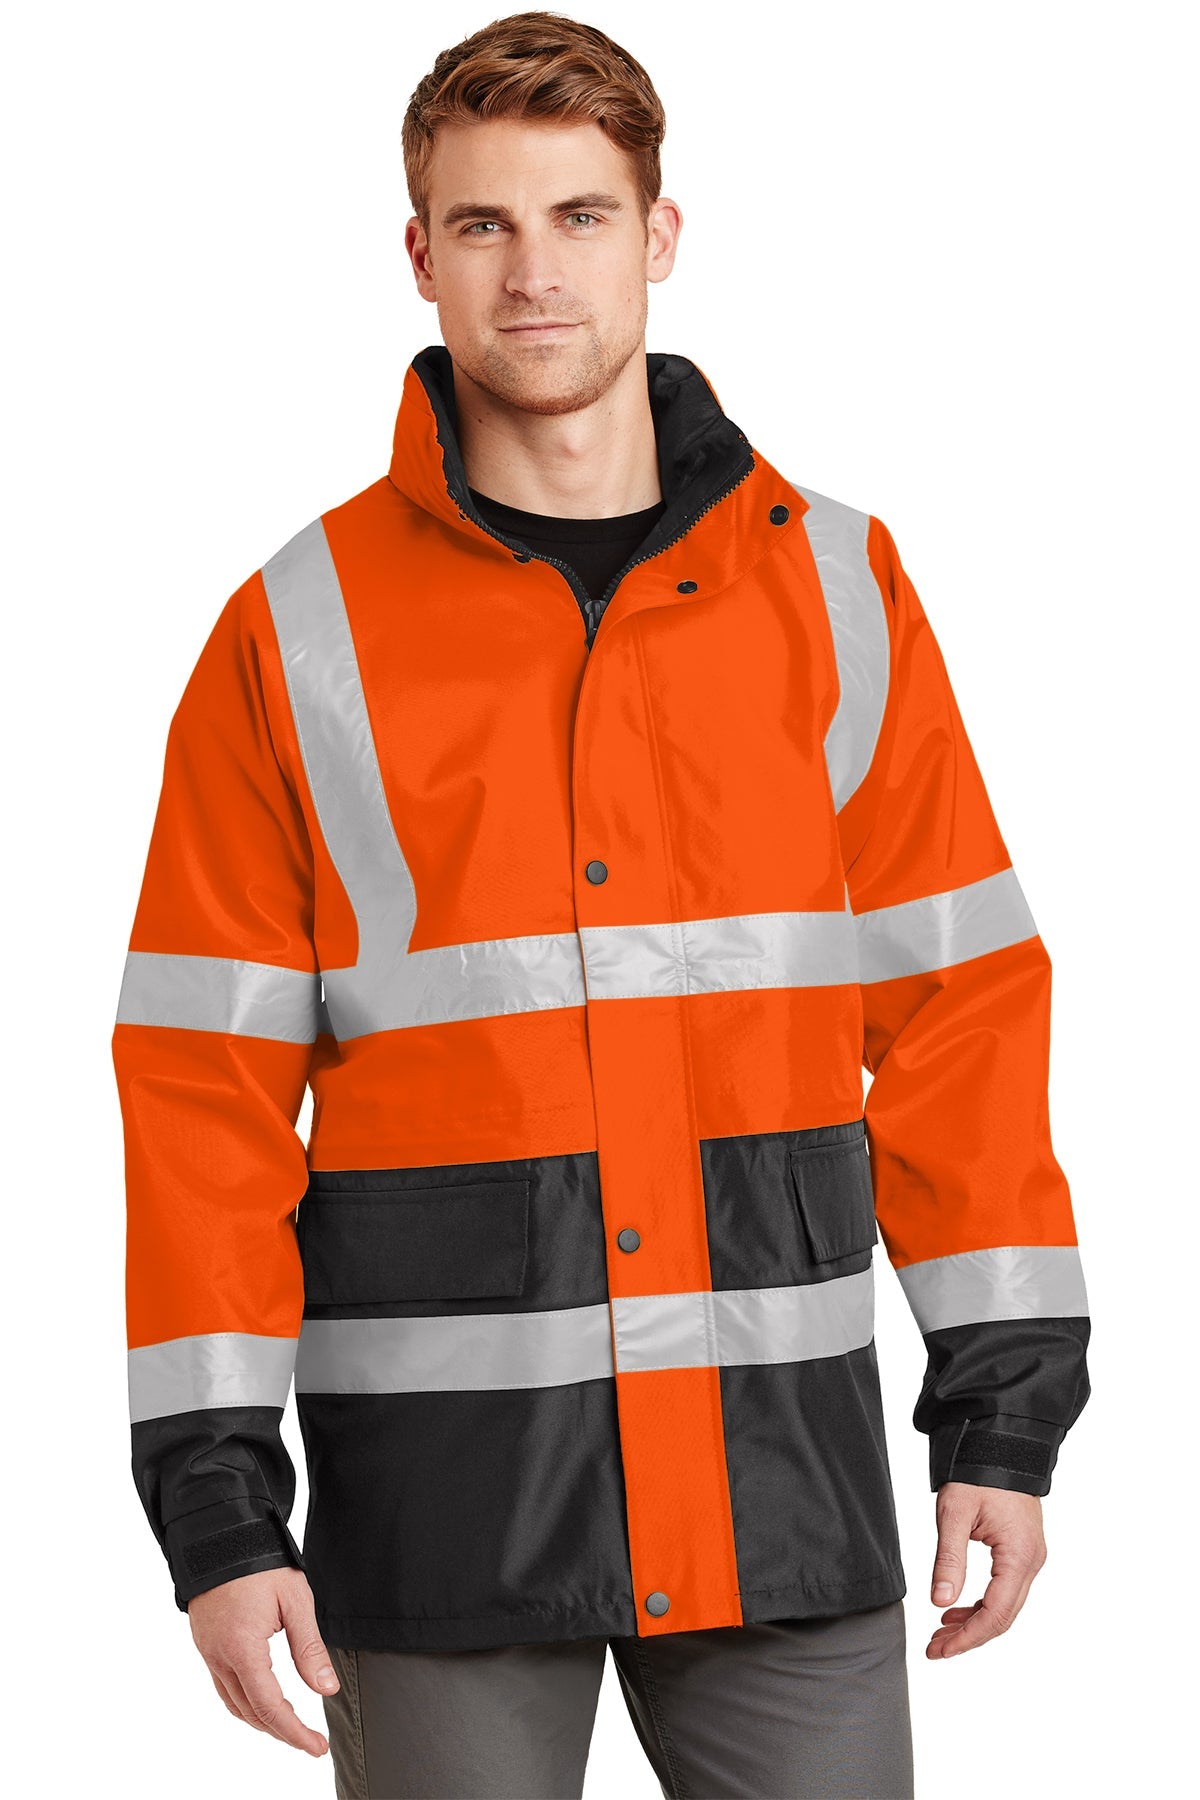 CornerStone Safety Orange/ Black CSJ24 embroidered team jackets